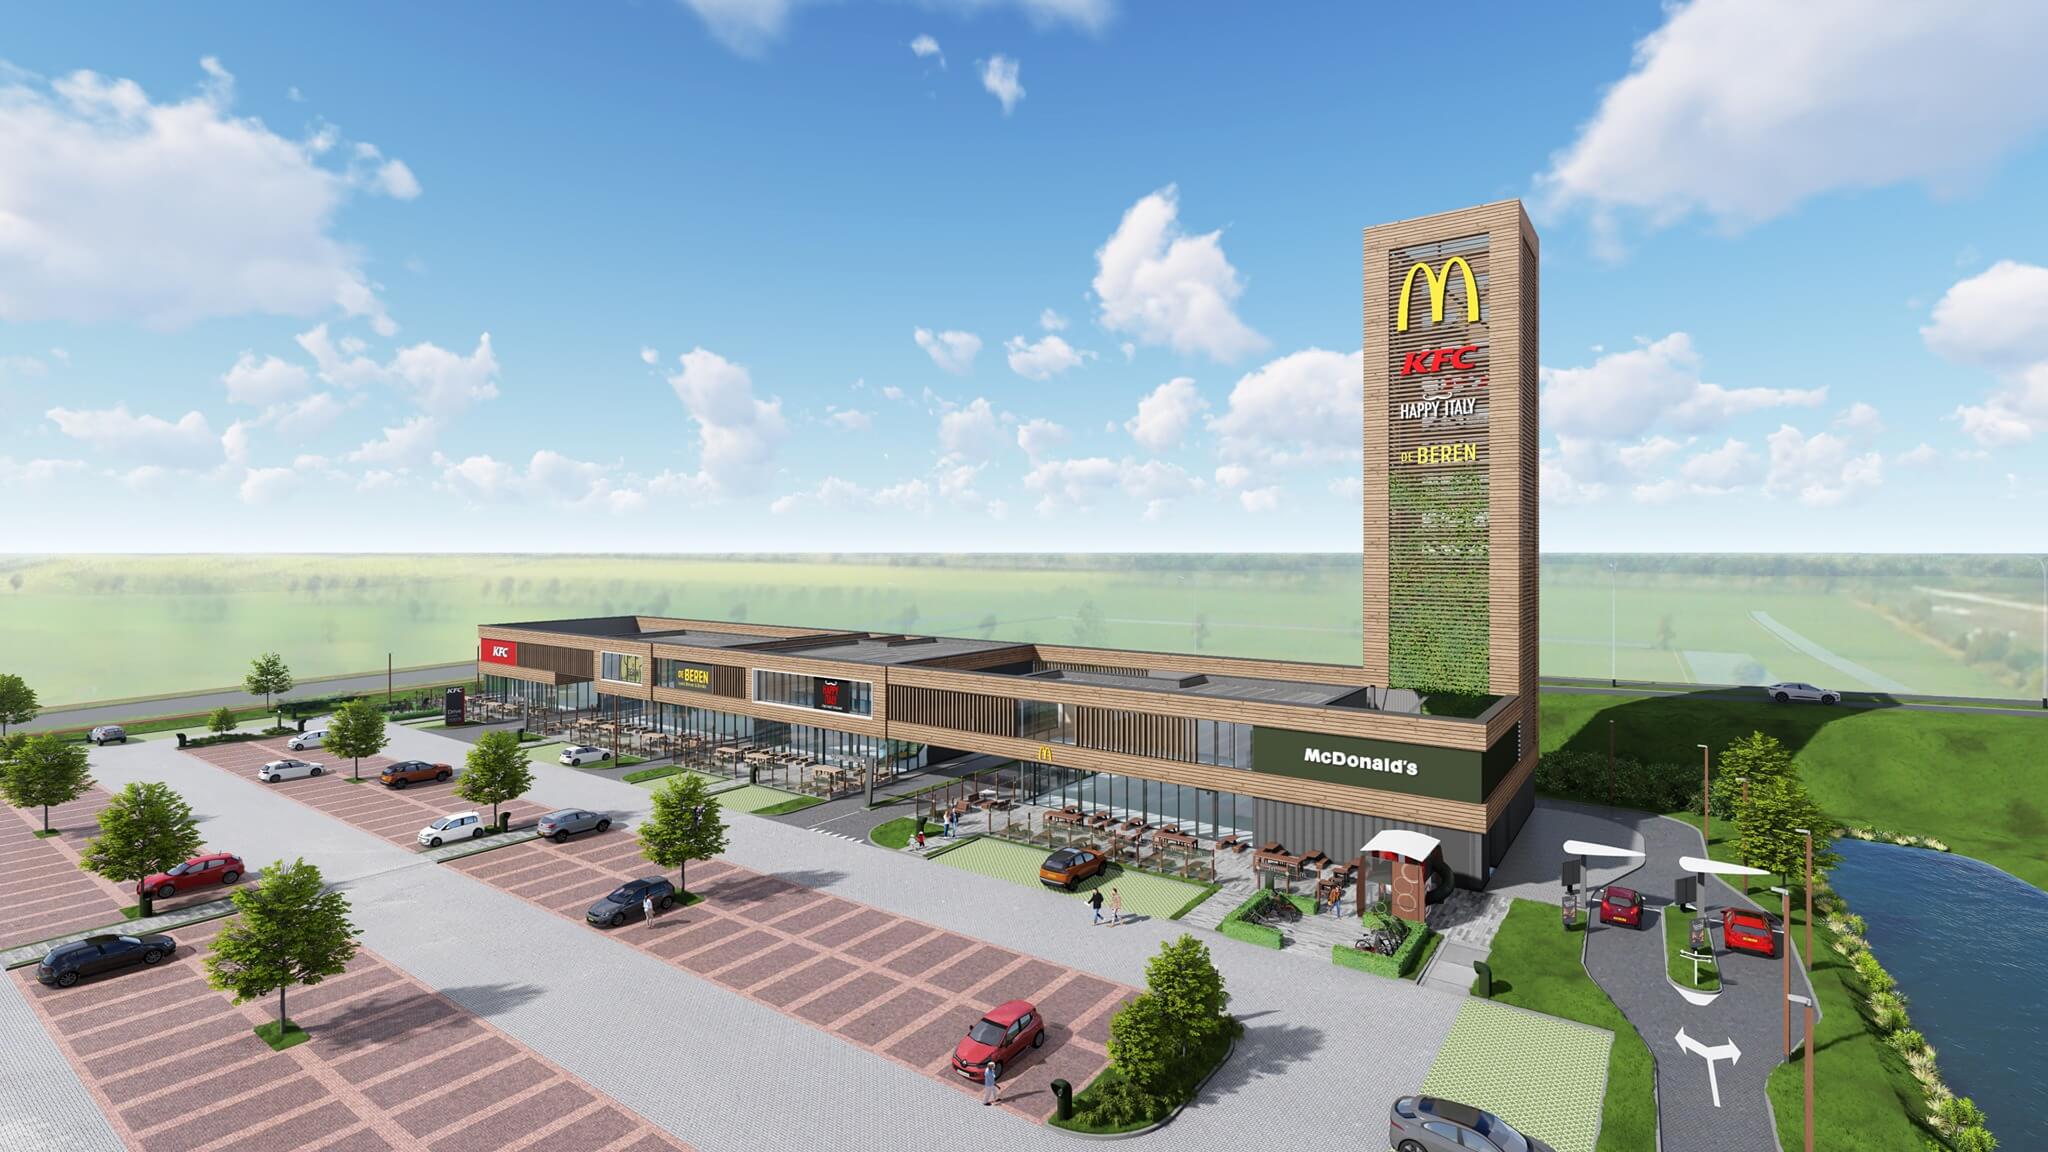 В новом ресторанном дворике разместятся заведения сетей общественного питания McDonald's, KFC, De Beren и Happy Italy